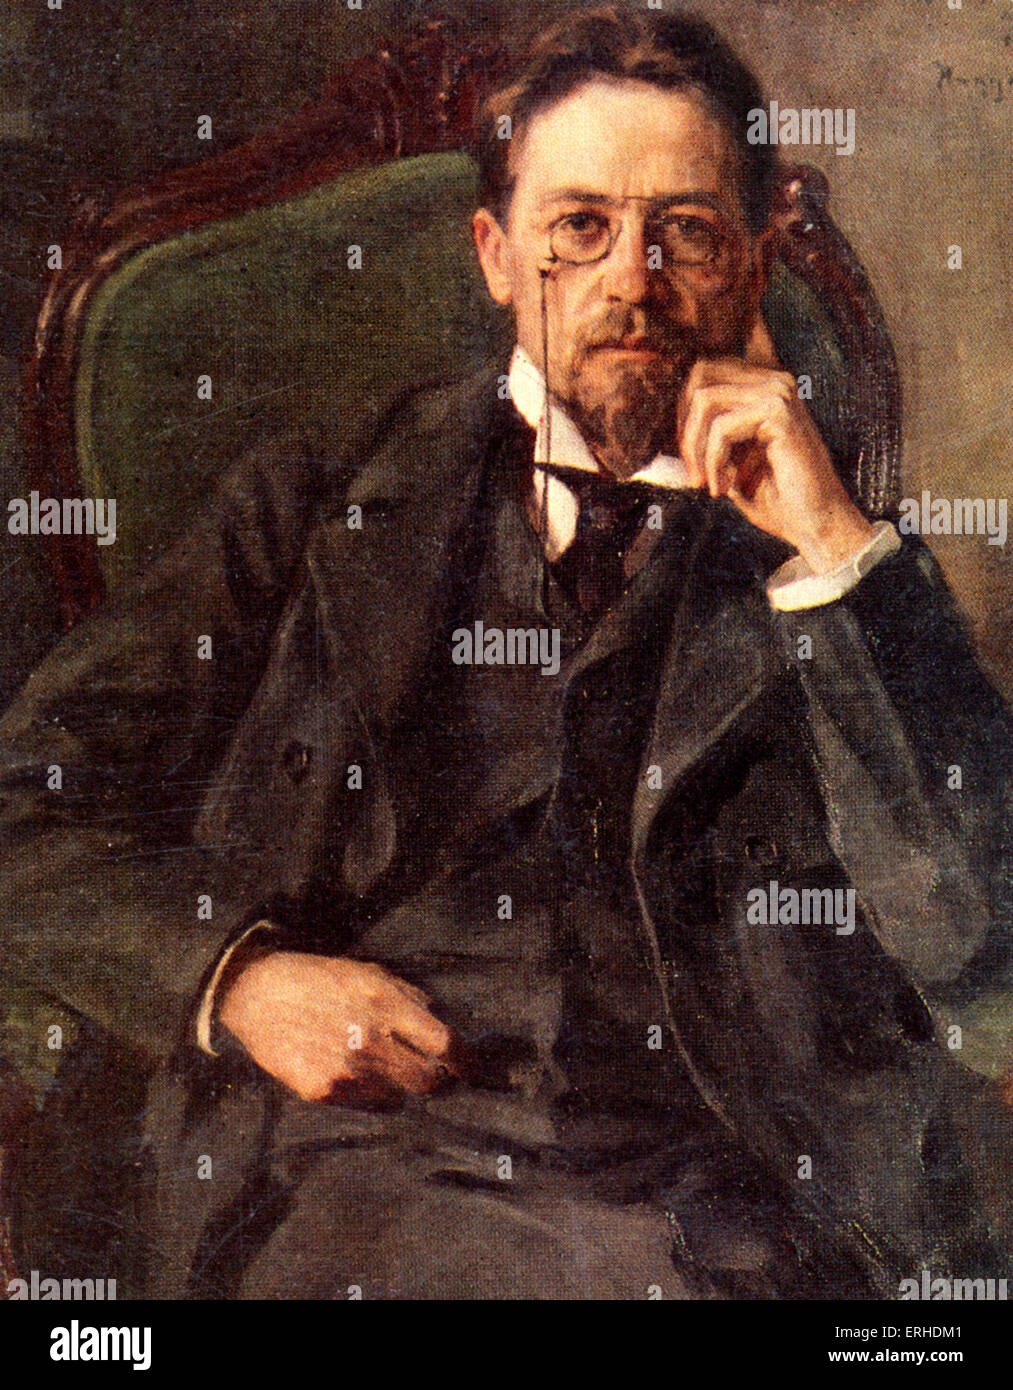 Anton Chejov - retrato. Dramaturgo ruso / dramaturgo; 17 de enero de 1860 - 2 de julio de 1904. Foto de stock